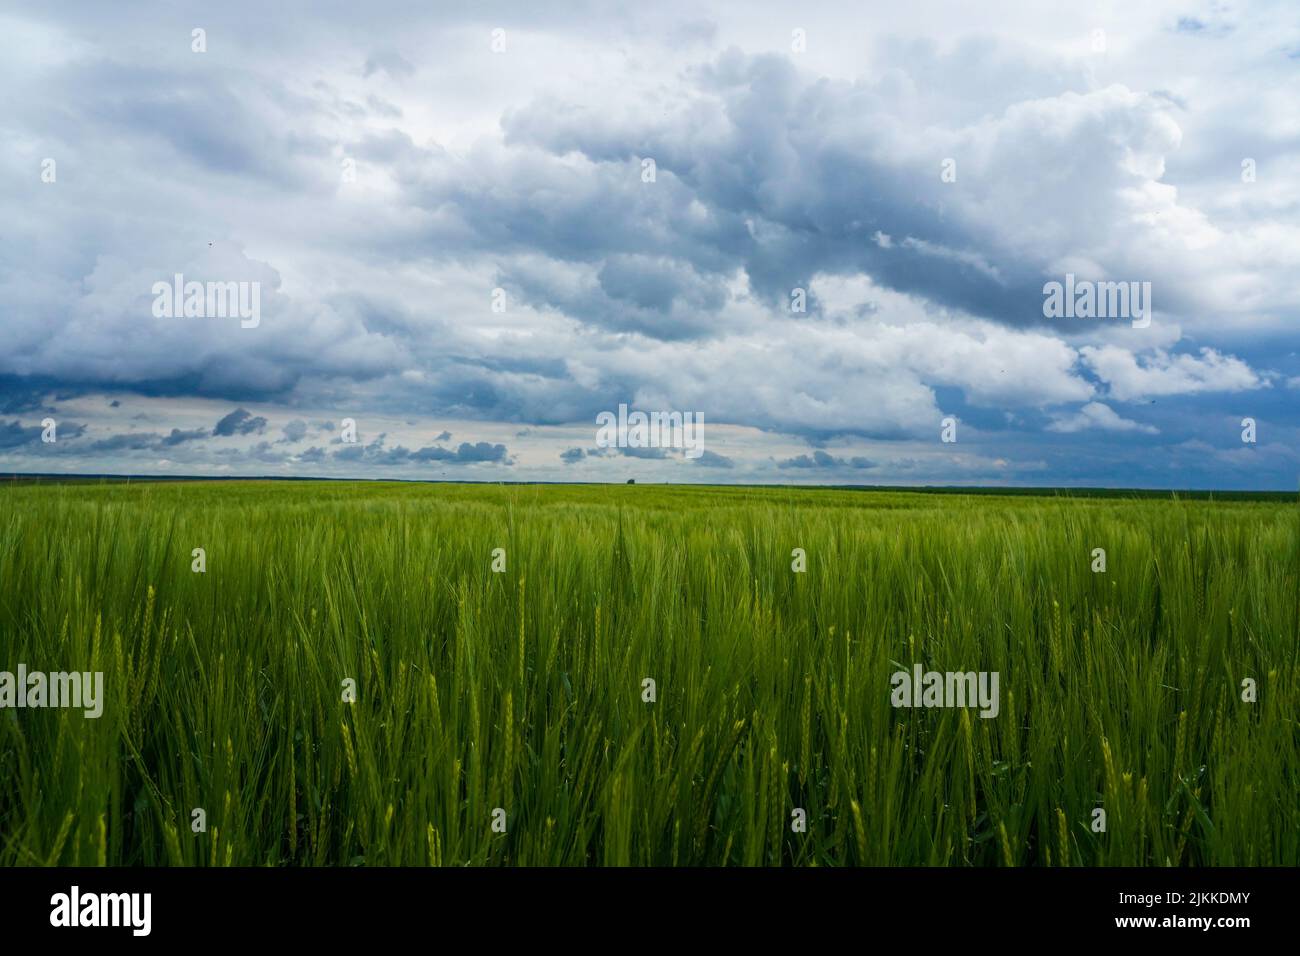 Una vista panorámica del campo abierto de trigo verde bajo un cielo nublado y sombrío Foto de stock